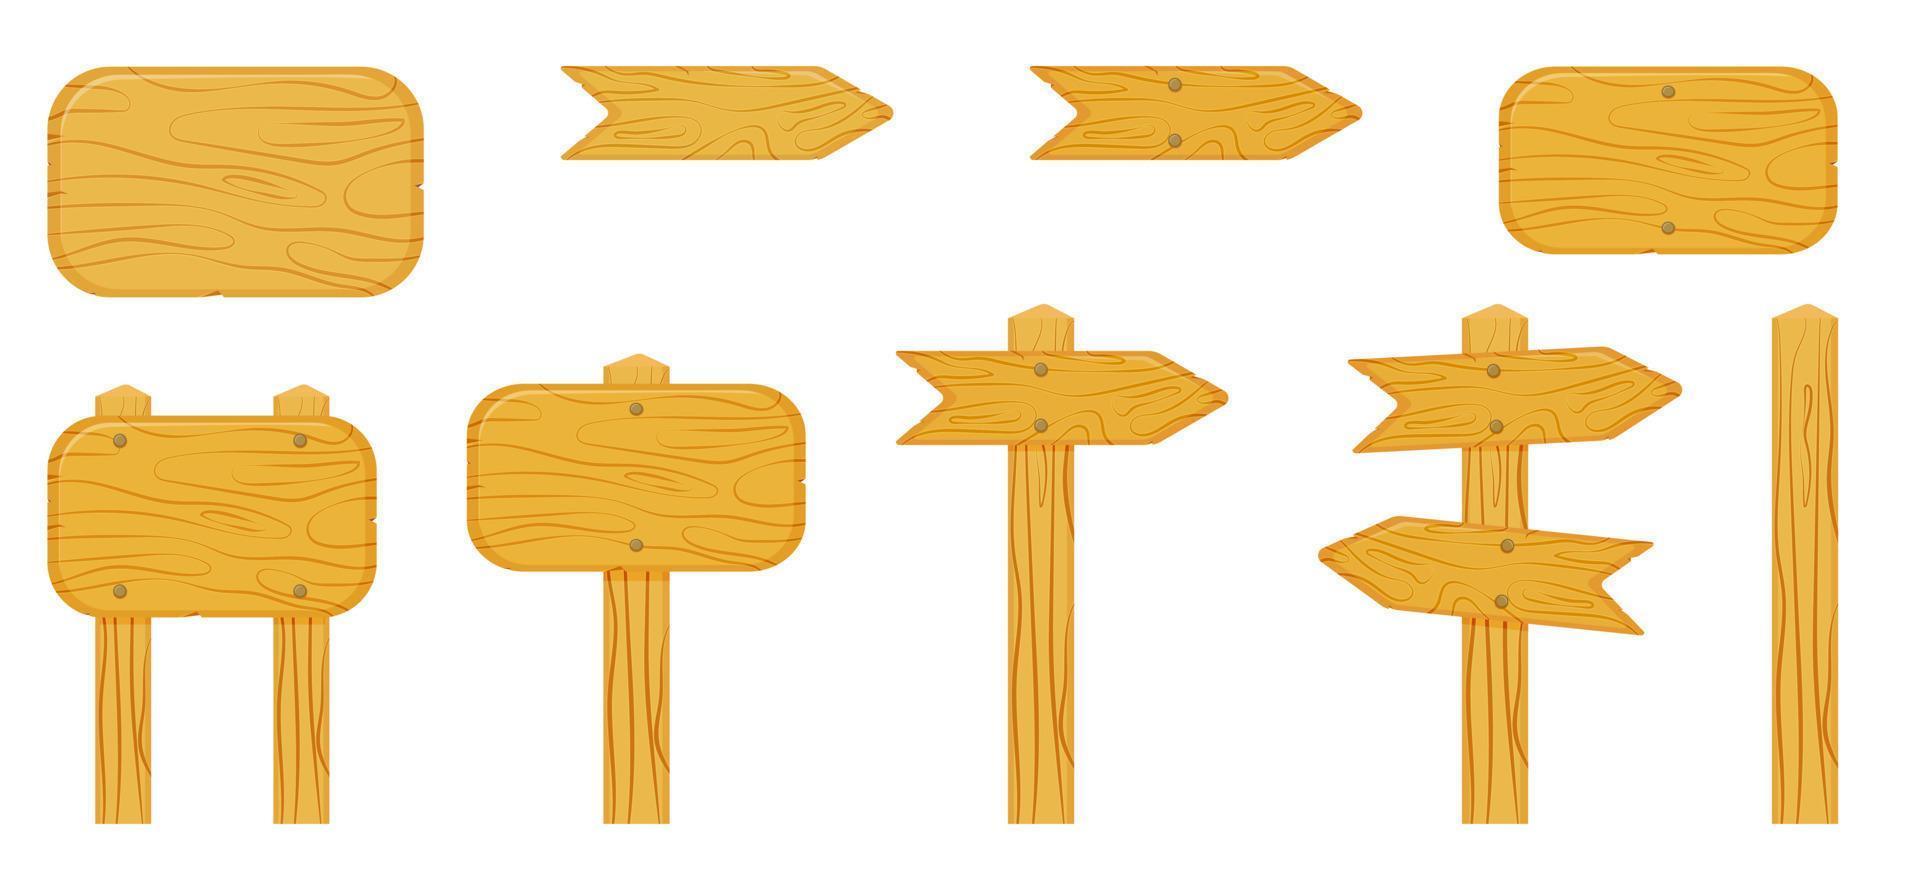 panneaux vides en bois avec des flèches indiquant le chemin. ensemble de panneaux de signalisation de dessin animé de vecteur avec un espace vide pour le texte.